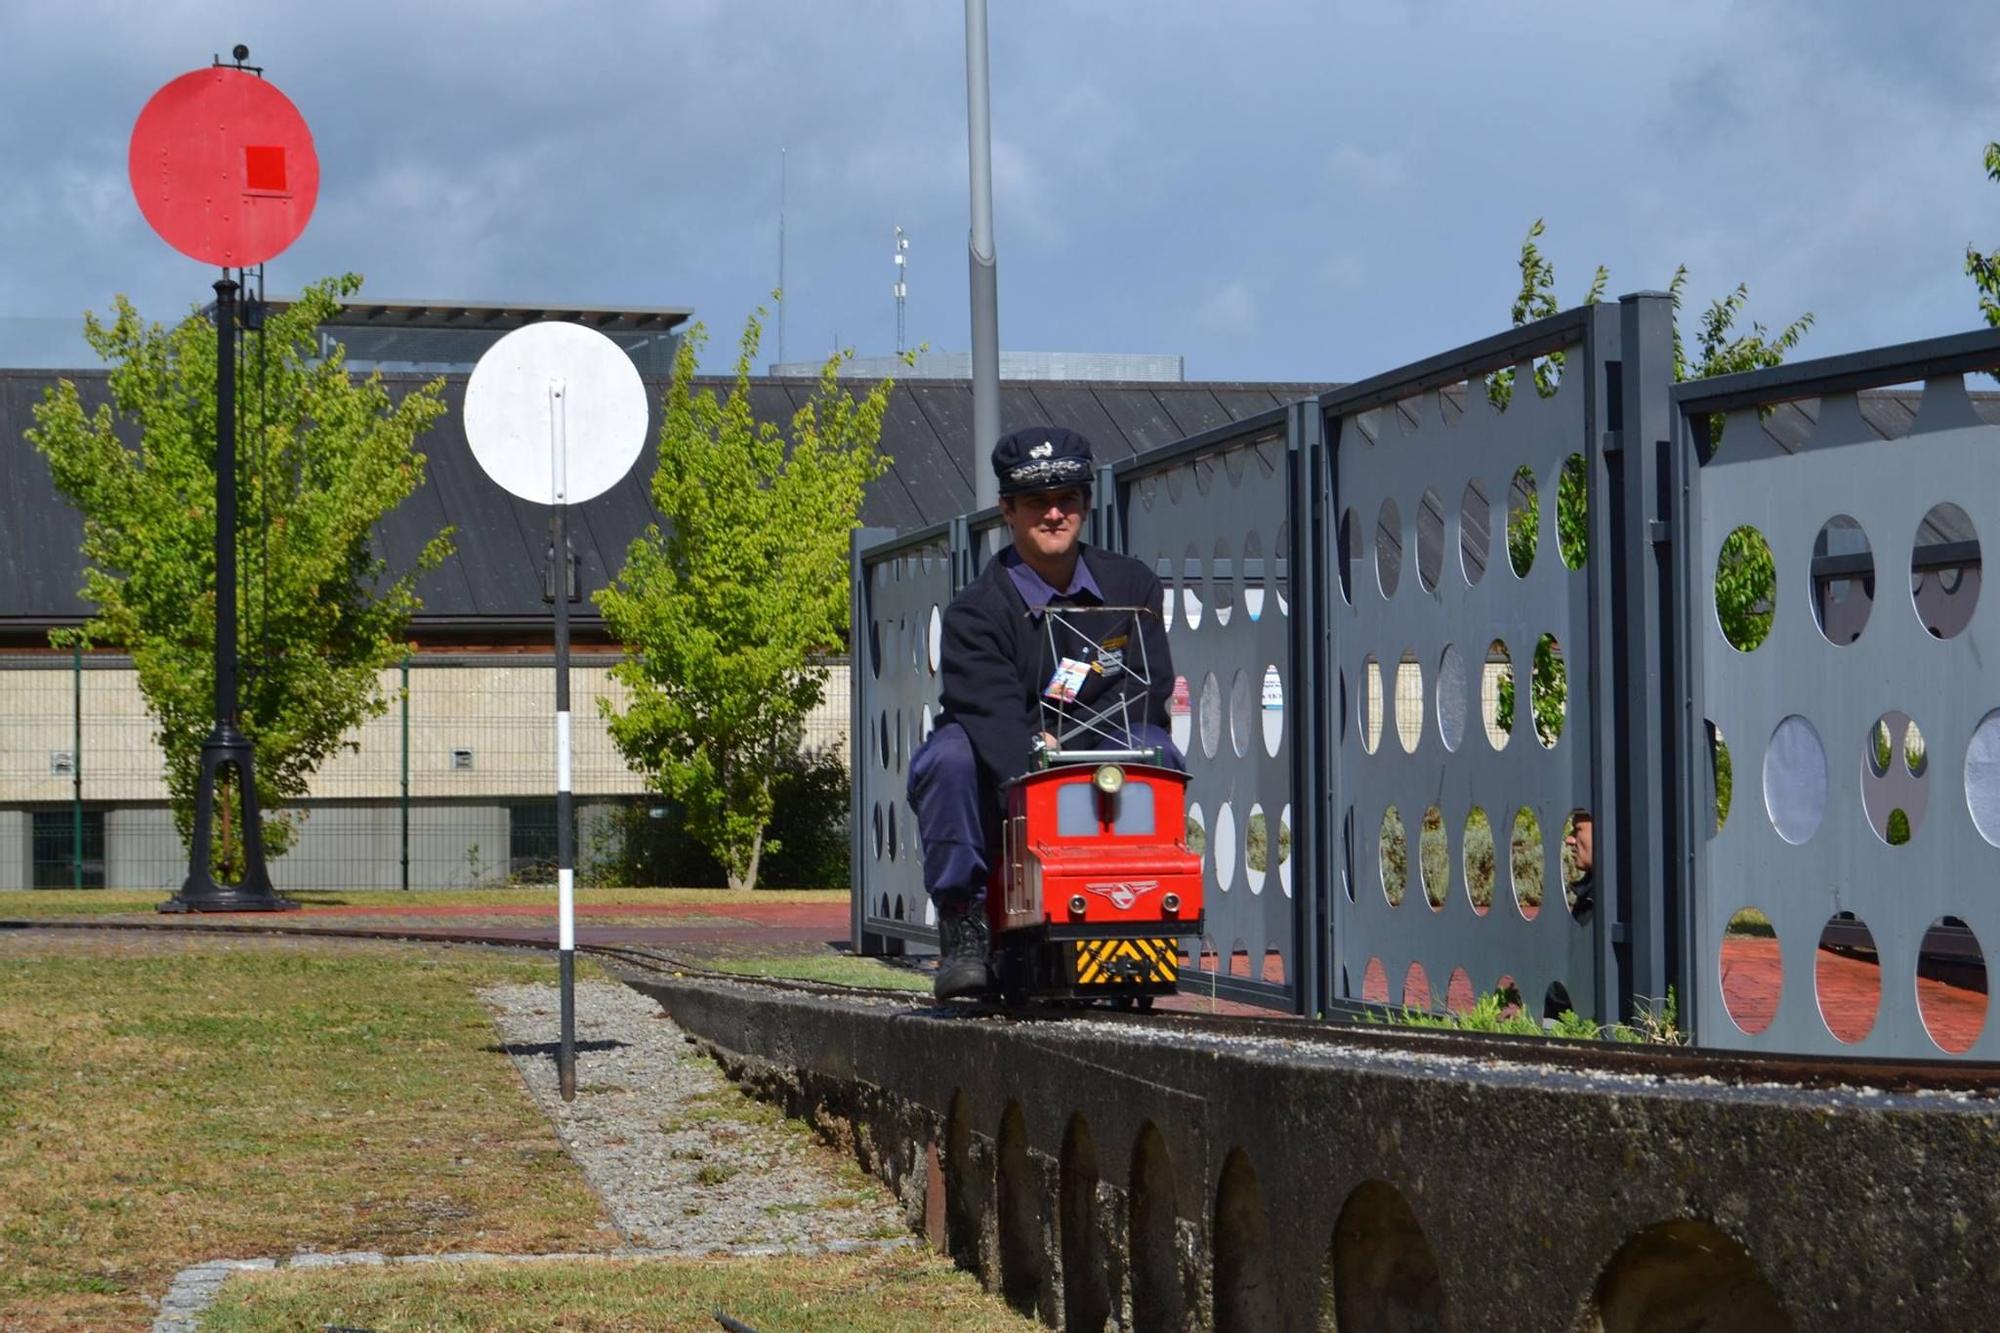 Ocio en Galicia: Parque ferroviario infantil Carrileiros